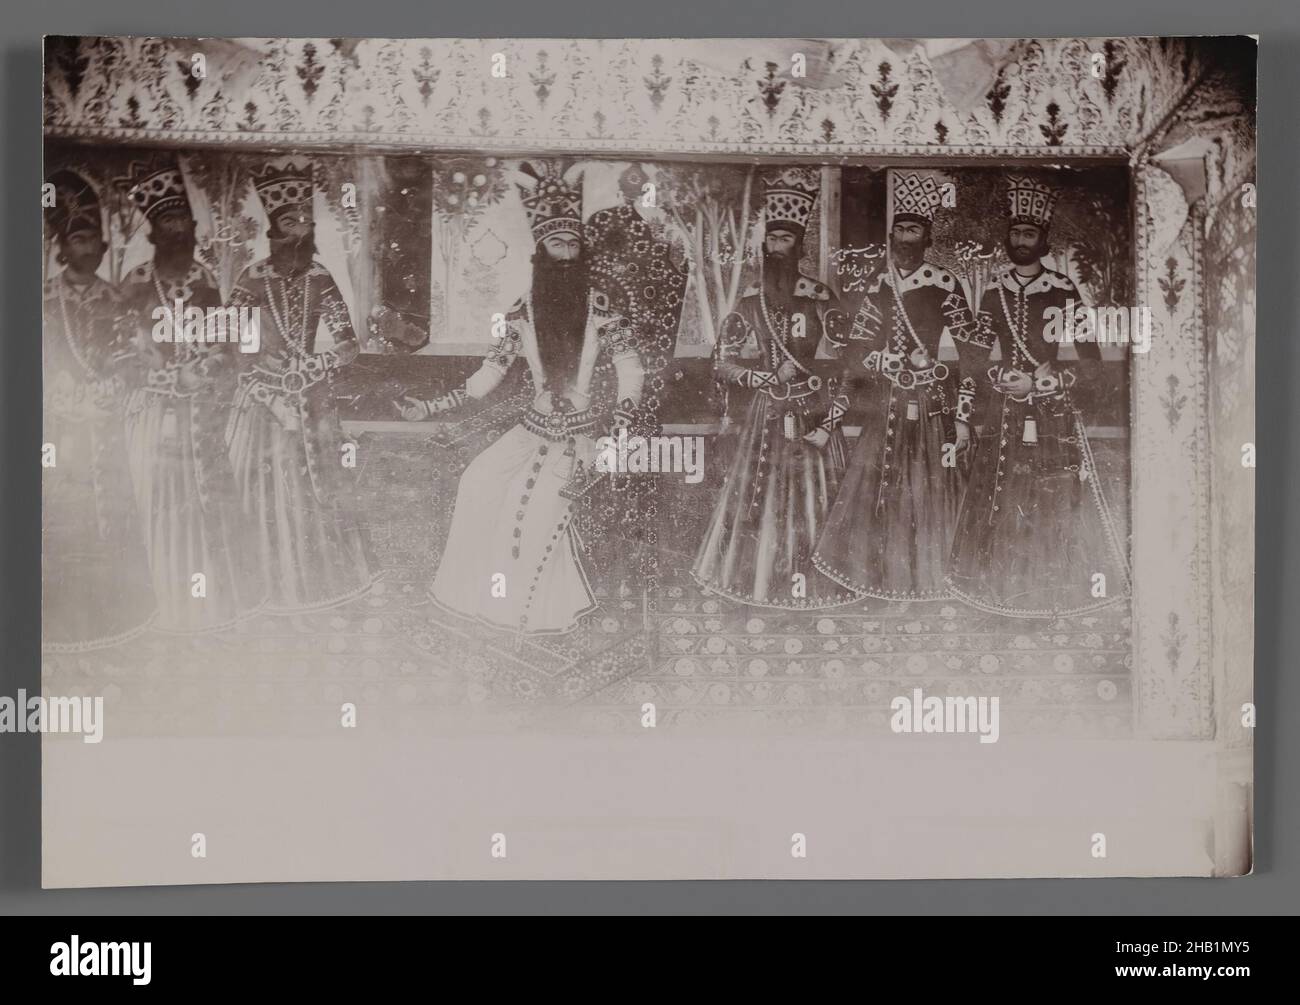 FAS sitzend auf einem Stuhl, eine von 274 Vintage-Fotografien, Gelatin-Silberdruckpapier, Ende 19th-Anfang 20th. Jahrhundert, Qajar, Qajar-Zeit, 4 9/16 x 6 9/16 Zoll, 11,6 x 16,6 cm, Gericht, Fath-Ali Shah Qajar, Iran, Monarch, Persien, Könige, Schah Stockfoto